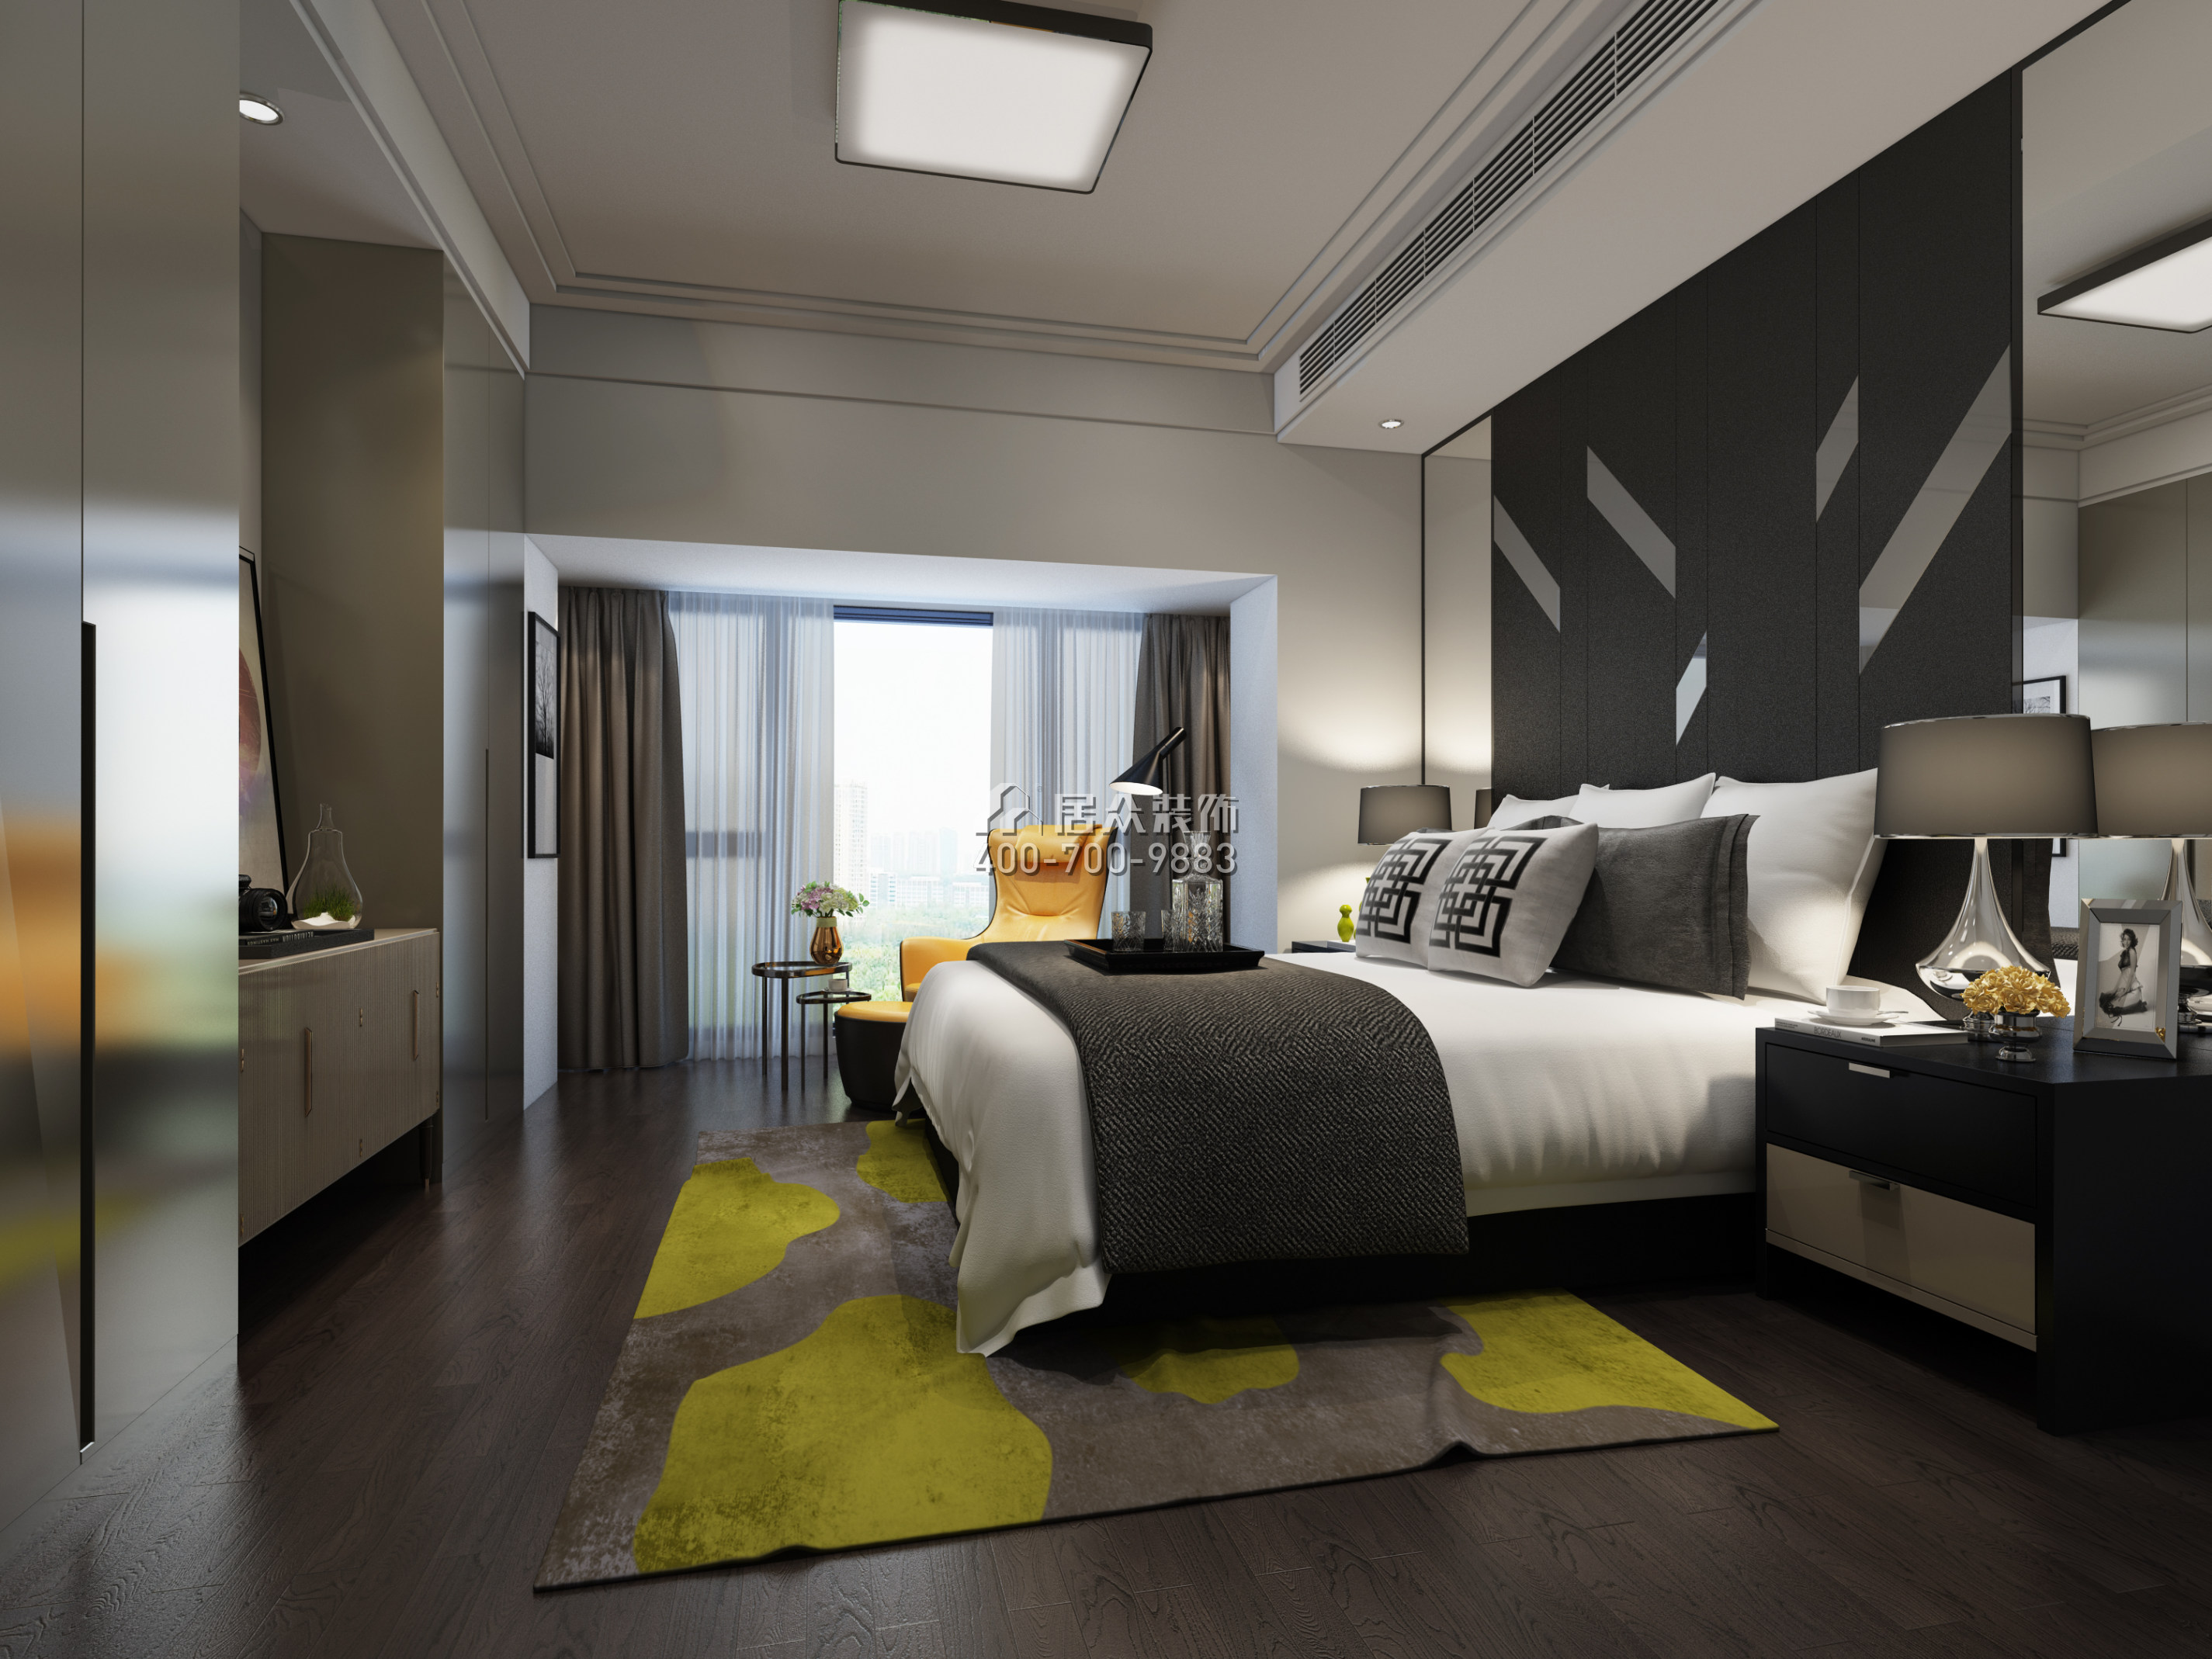 虹湾花园135平方米现代简约风格平层户型卧室装修效果图